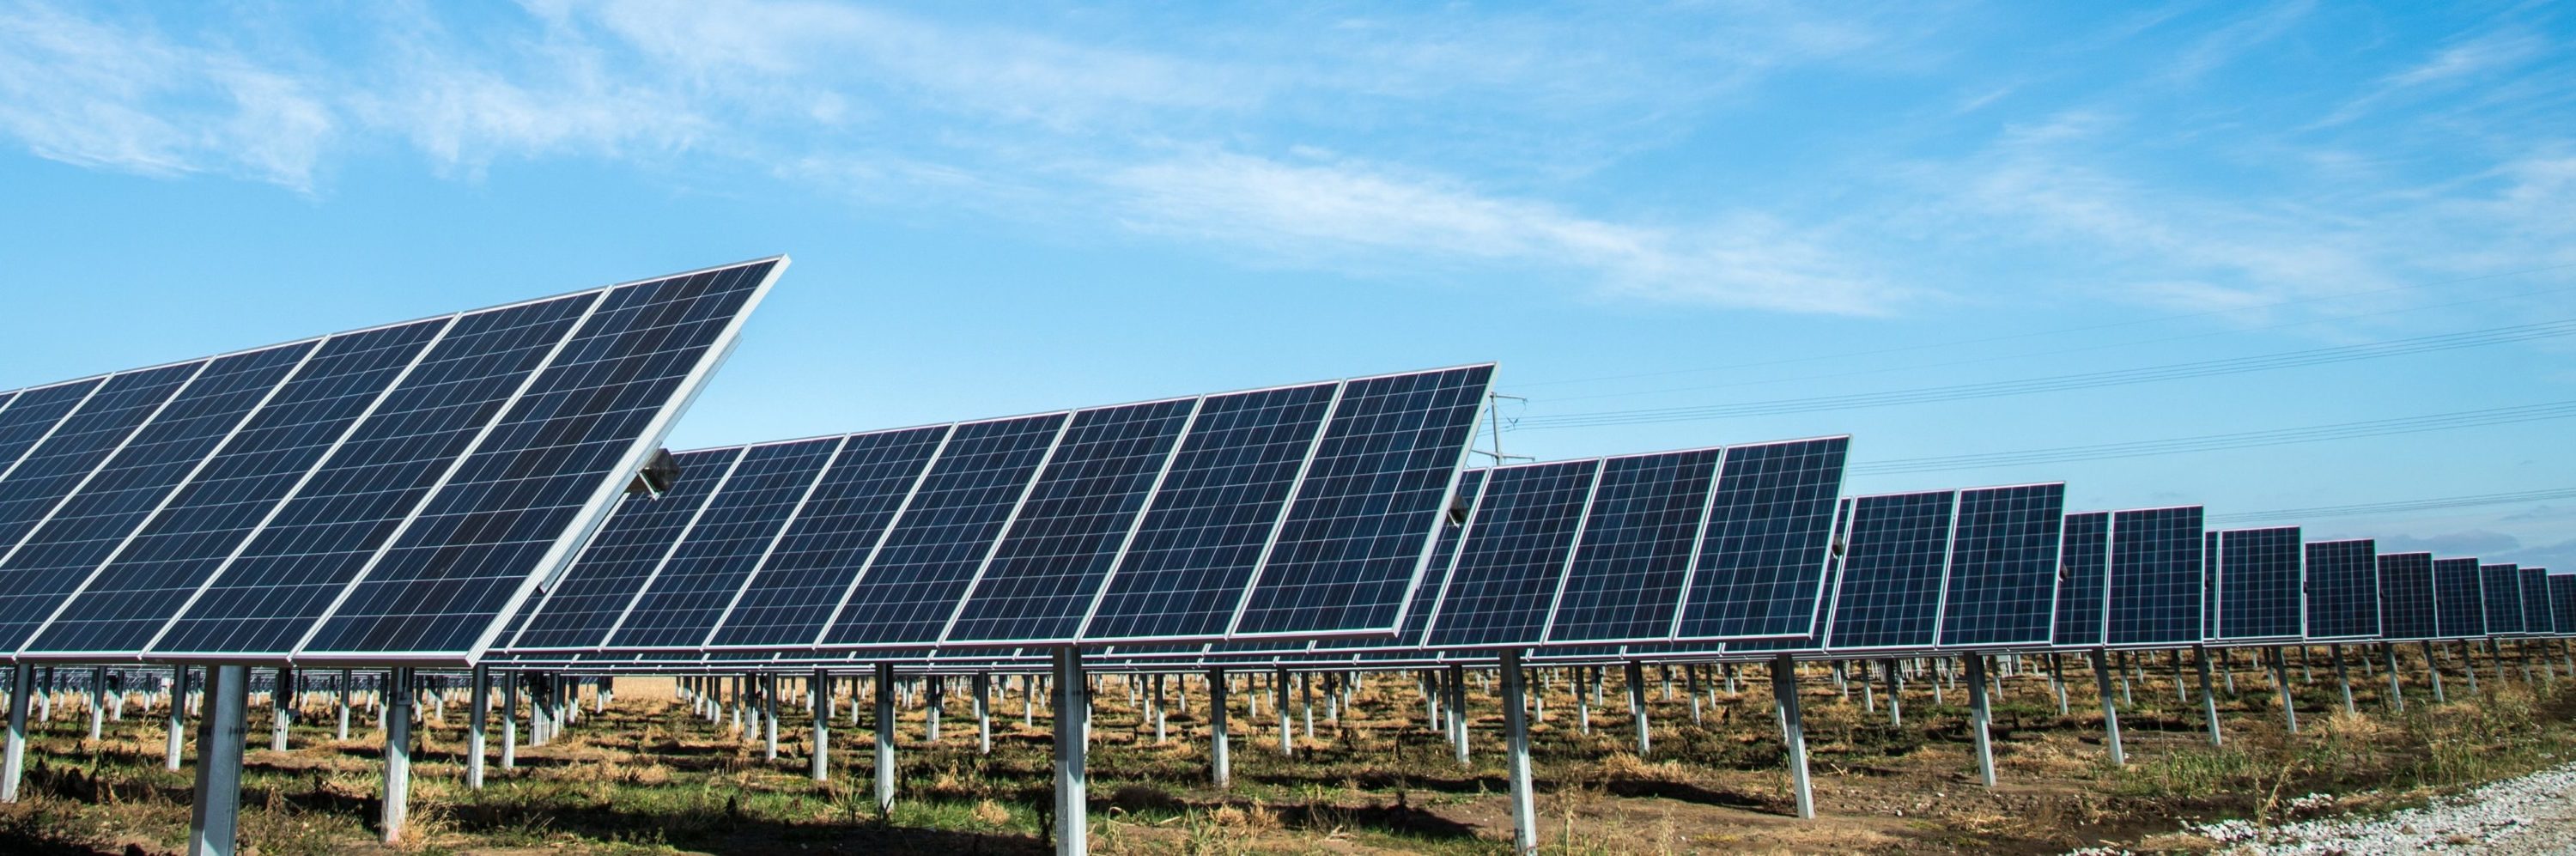 strømlinjeformer serverdatasenter med solenergi og grønn energi